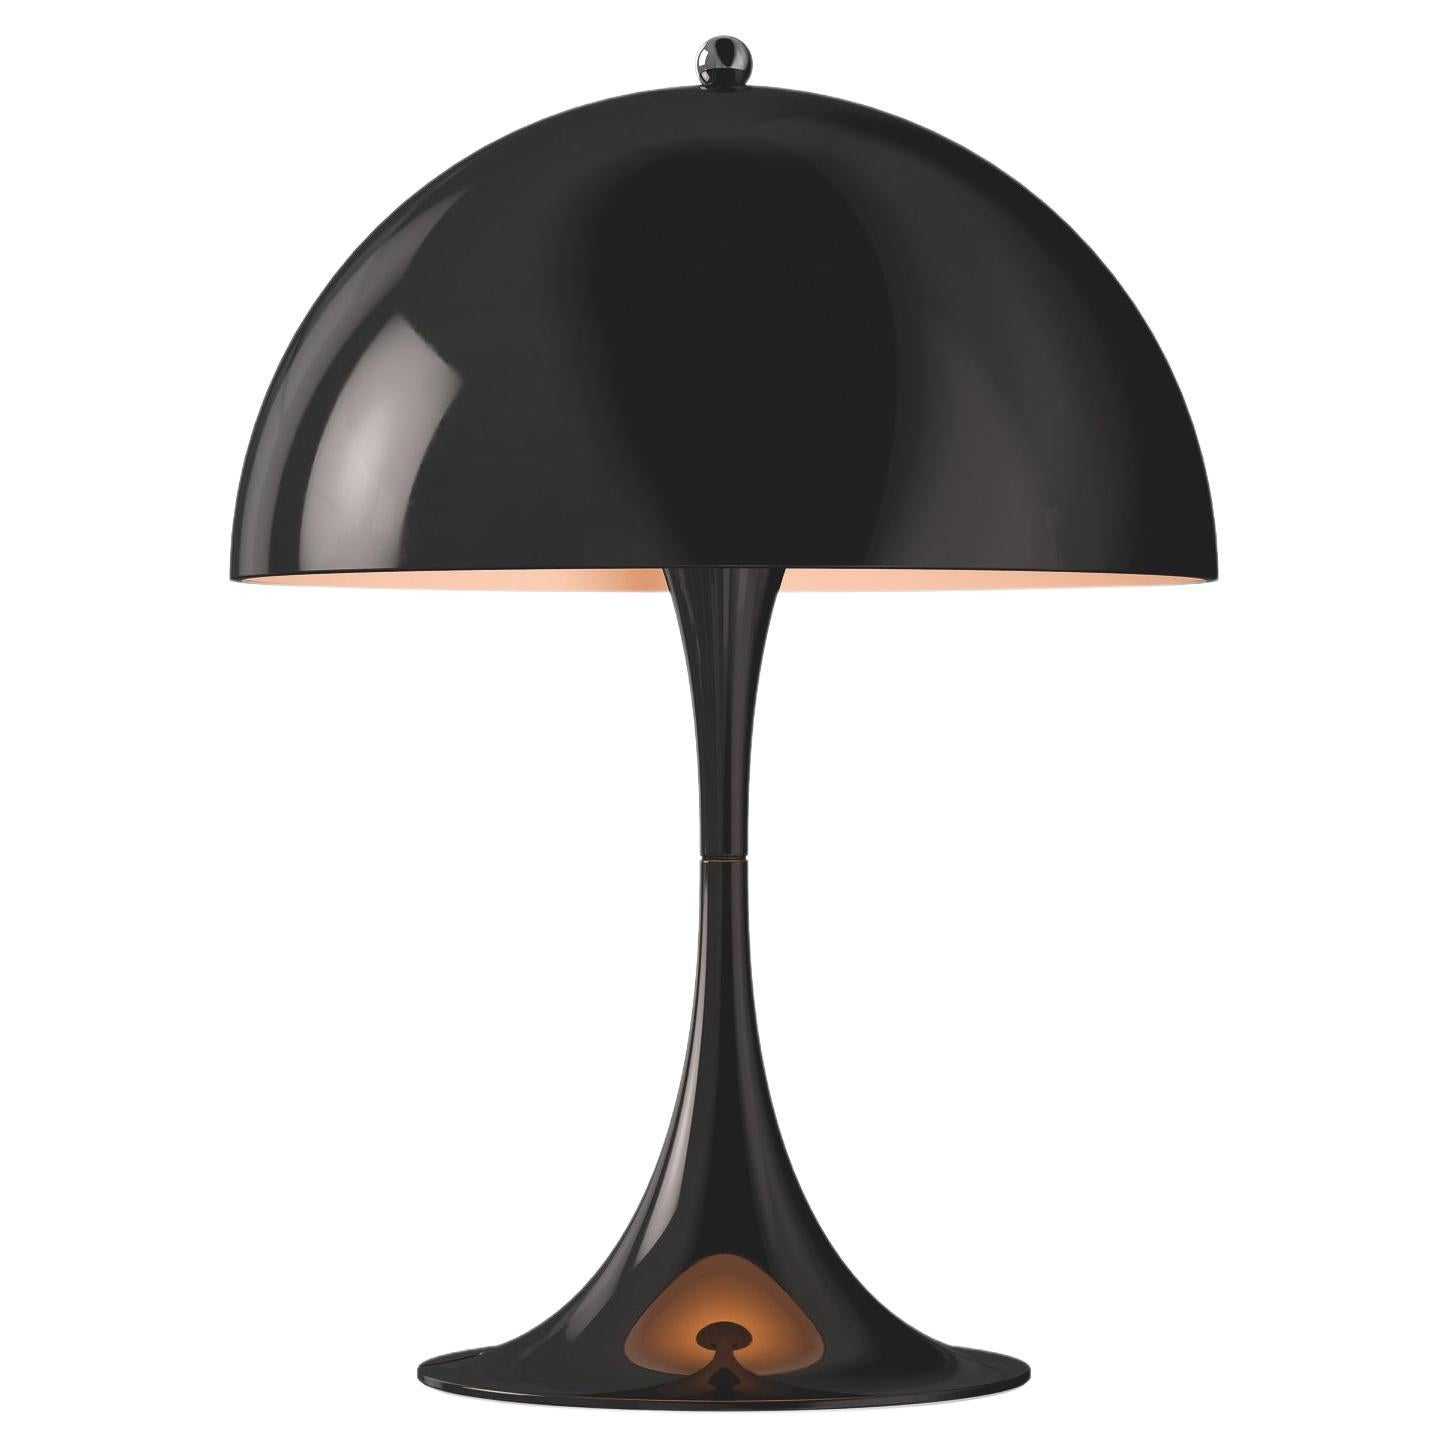 Louis Poulsen Panthella 250 Table Lamp in Black by Verner Panton